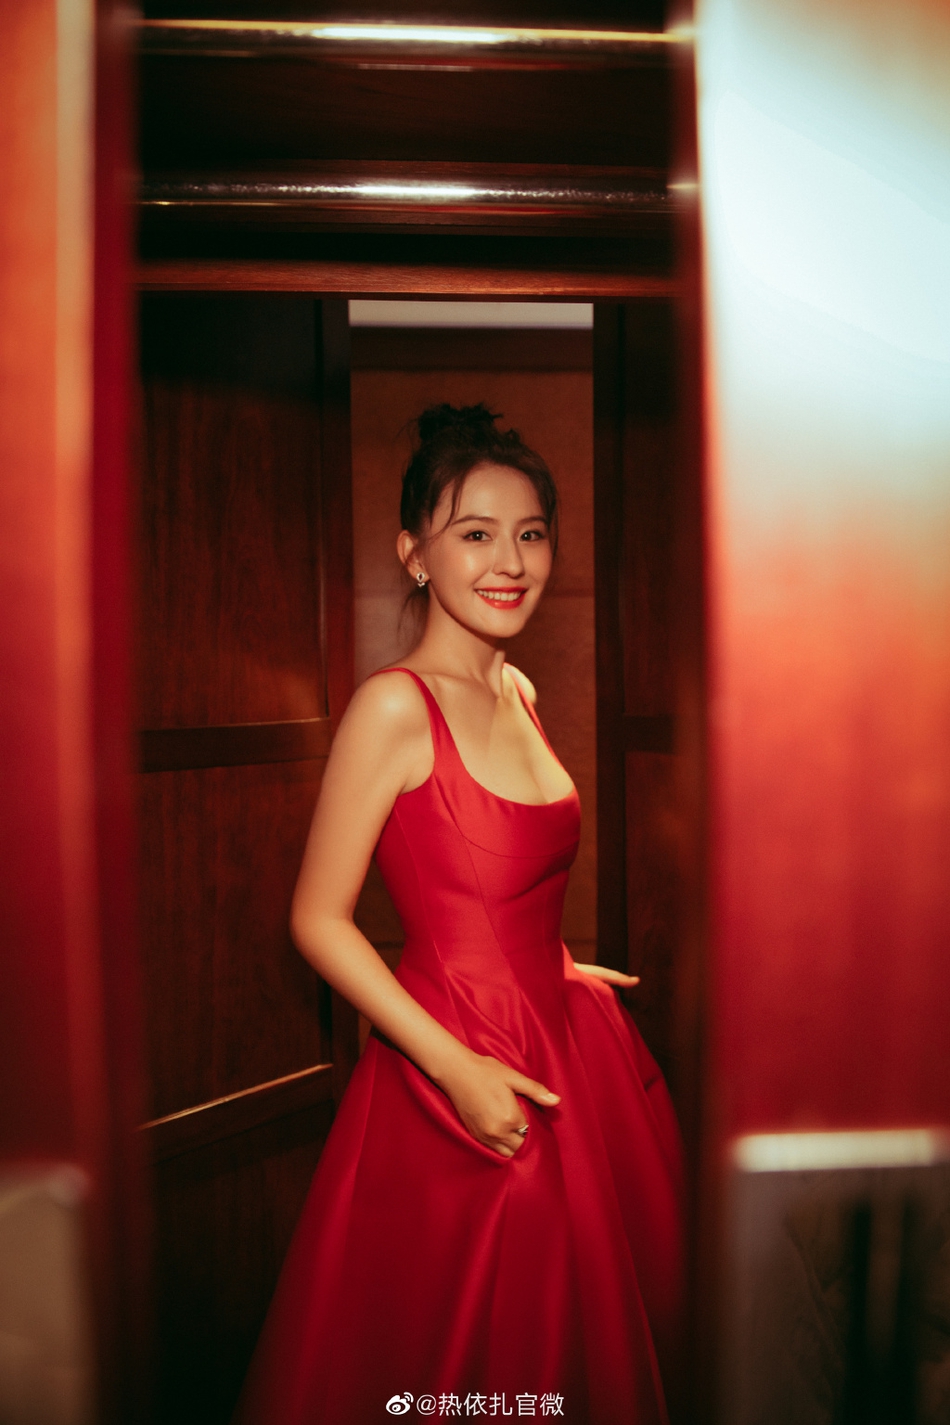 热依扎吊带红裙散发优雅魅力写真  第2张